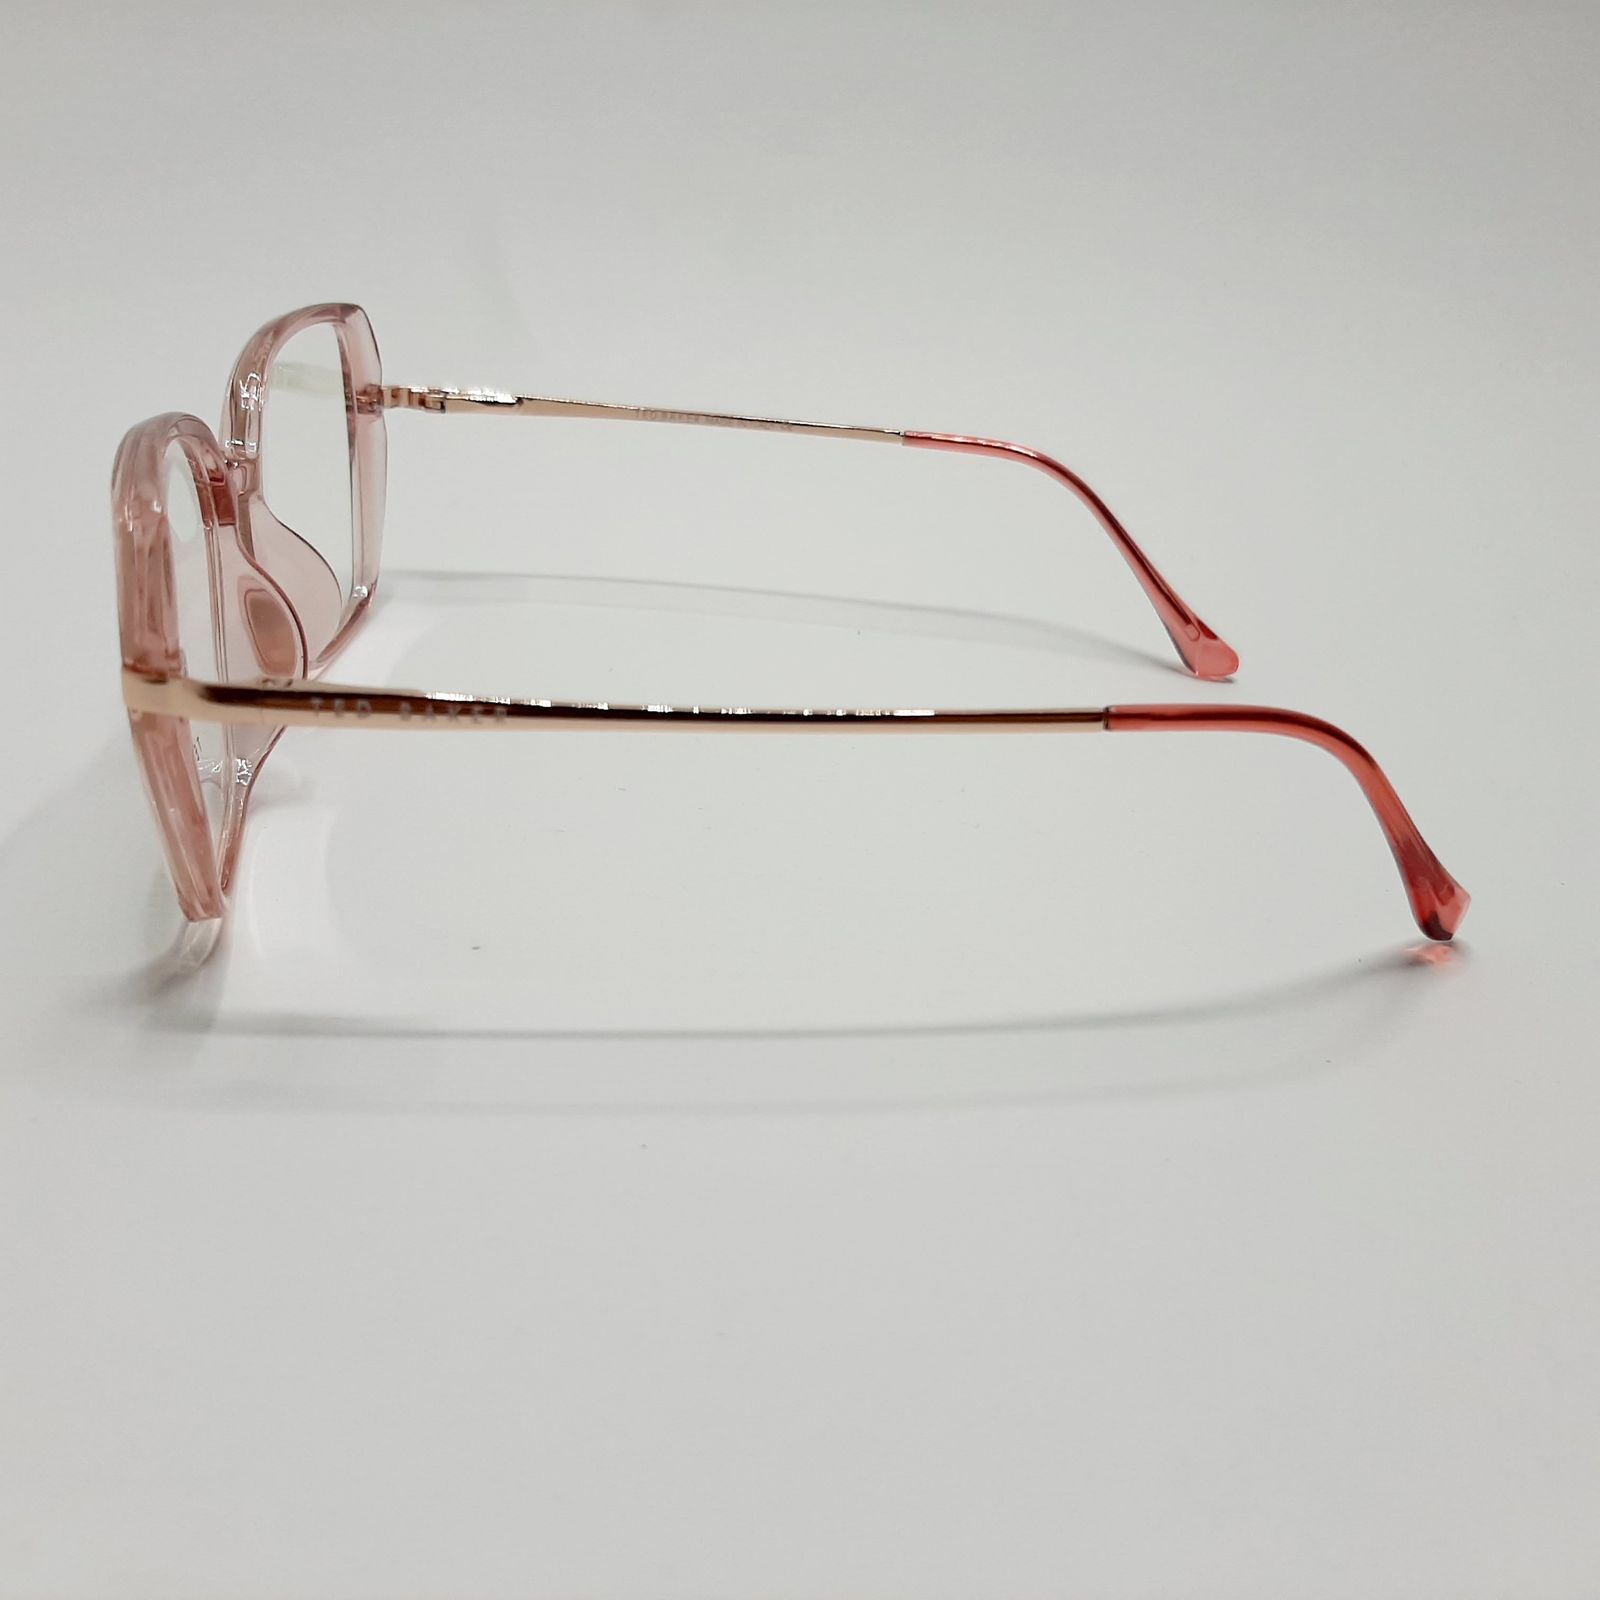 فریم عینک طبی زنانه تد بیکر مدل 95642c6 -  - 5